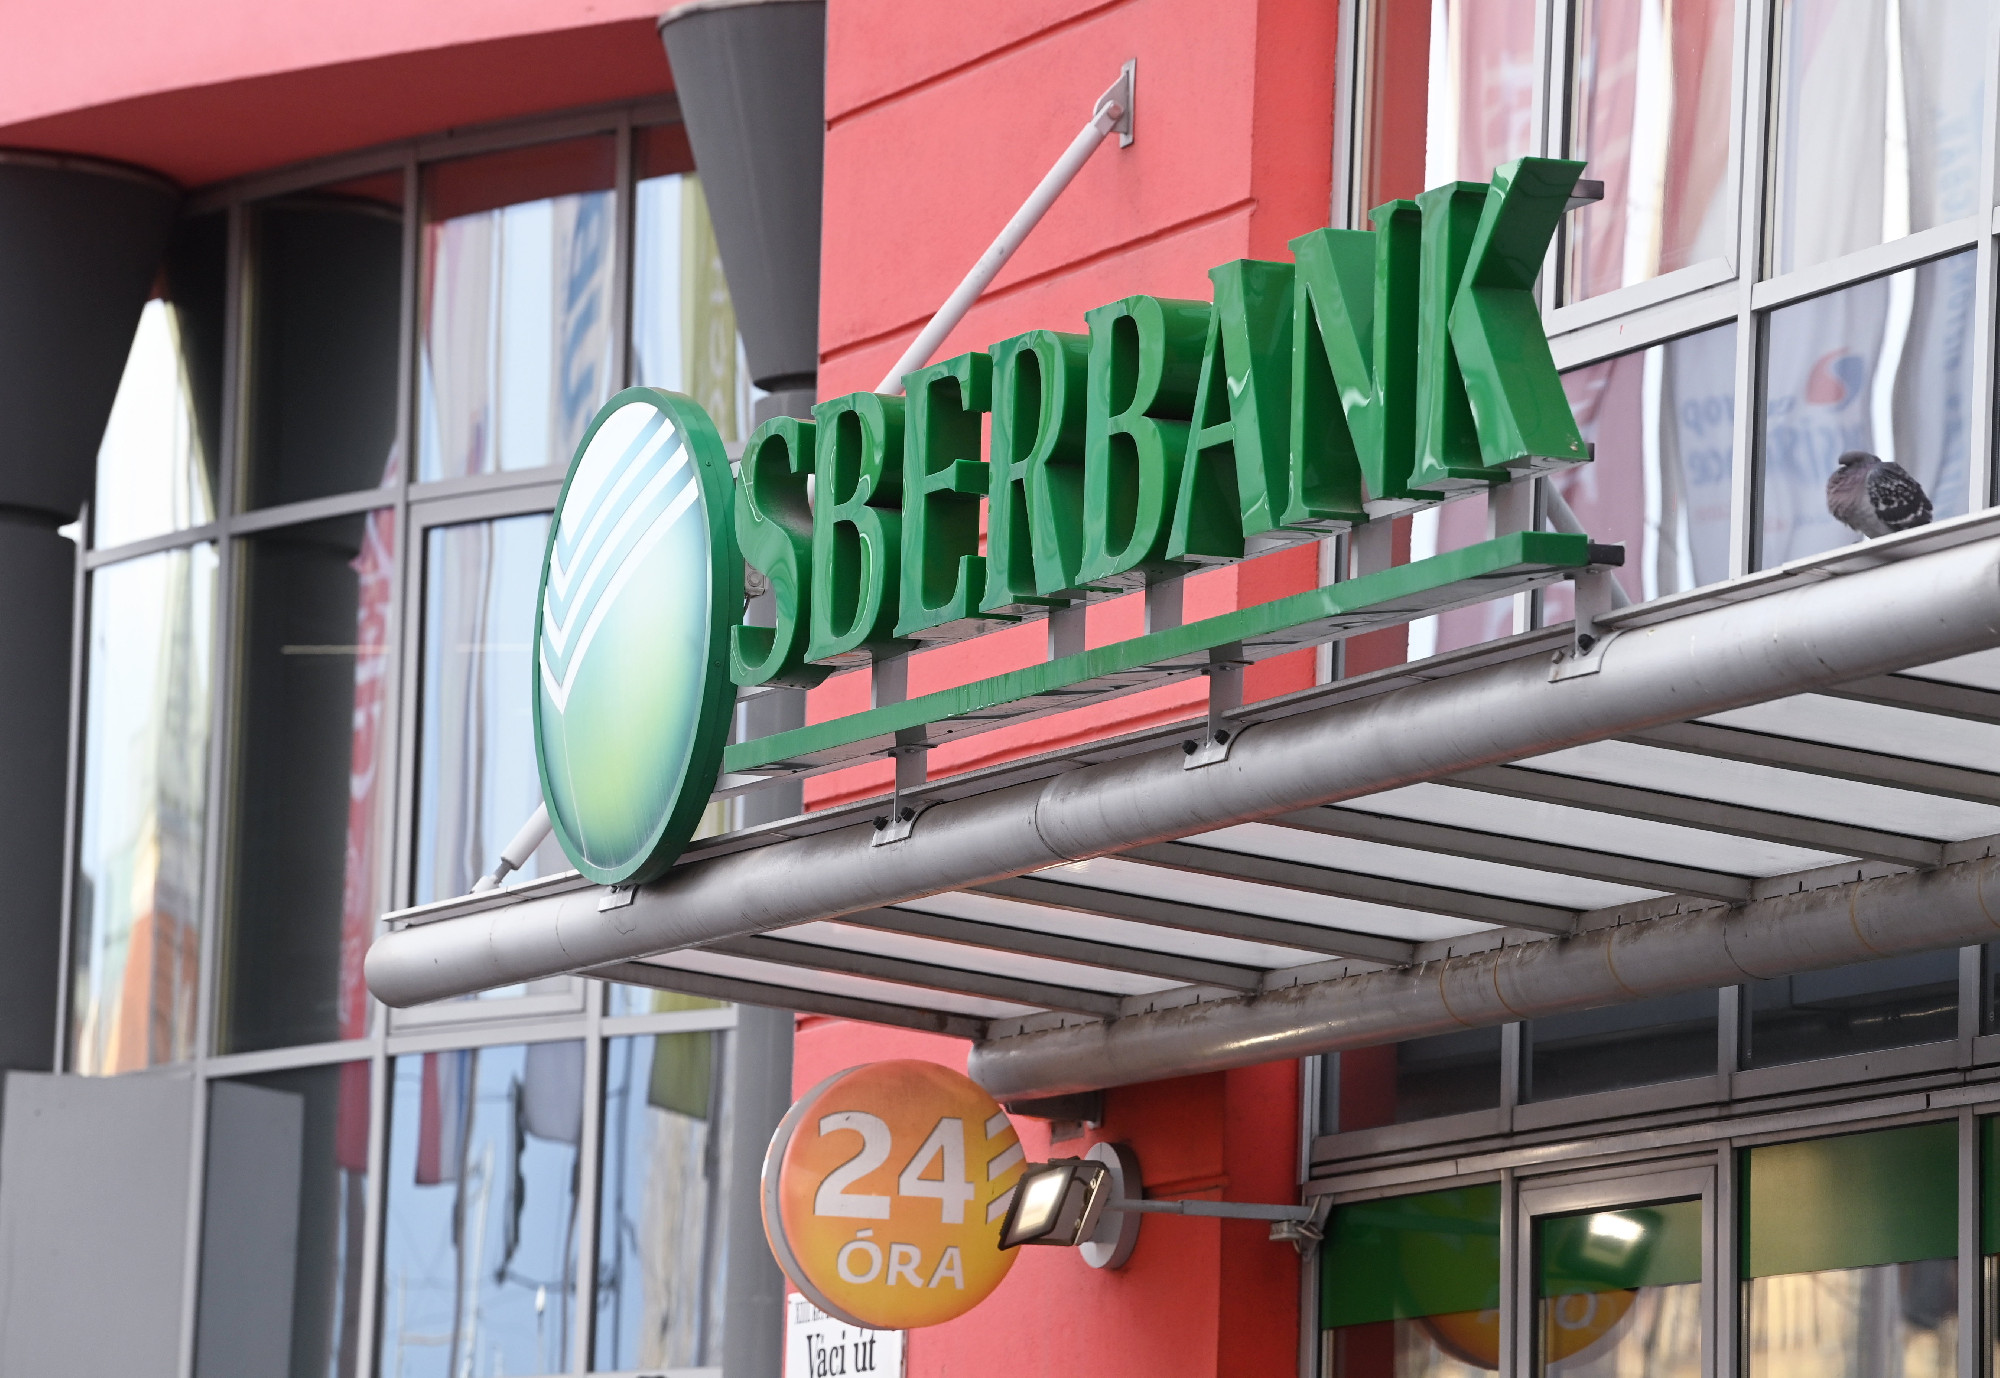 Hétmilliós betétkifizetési korlát és felügyeleti biztos a magyar Sberbanknál